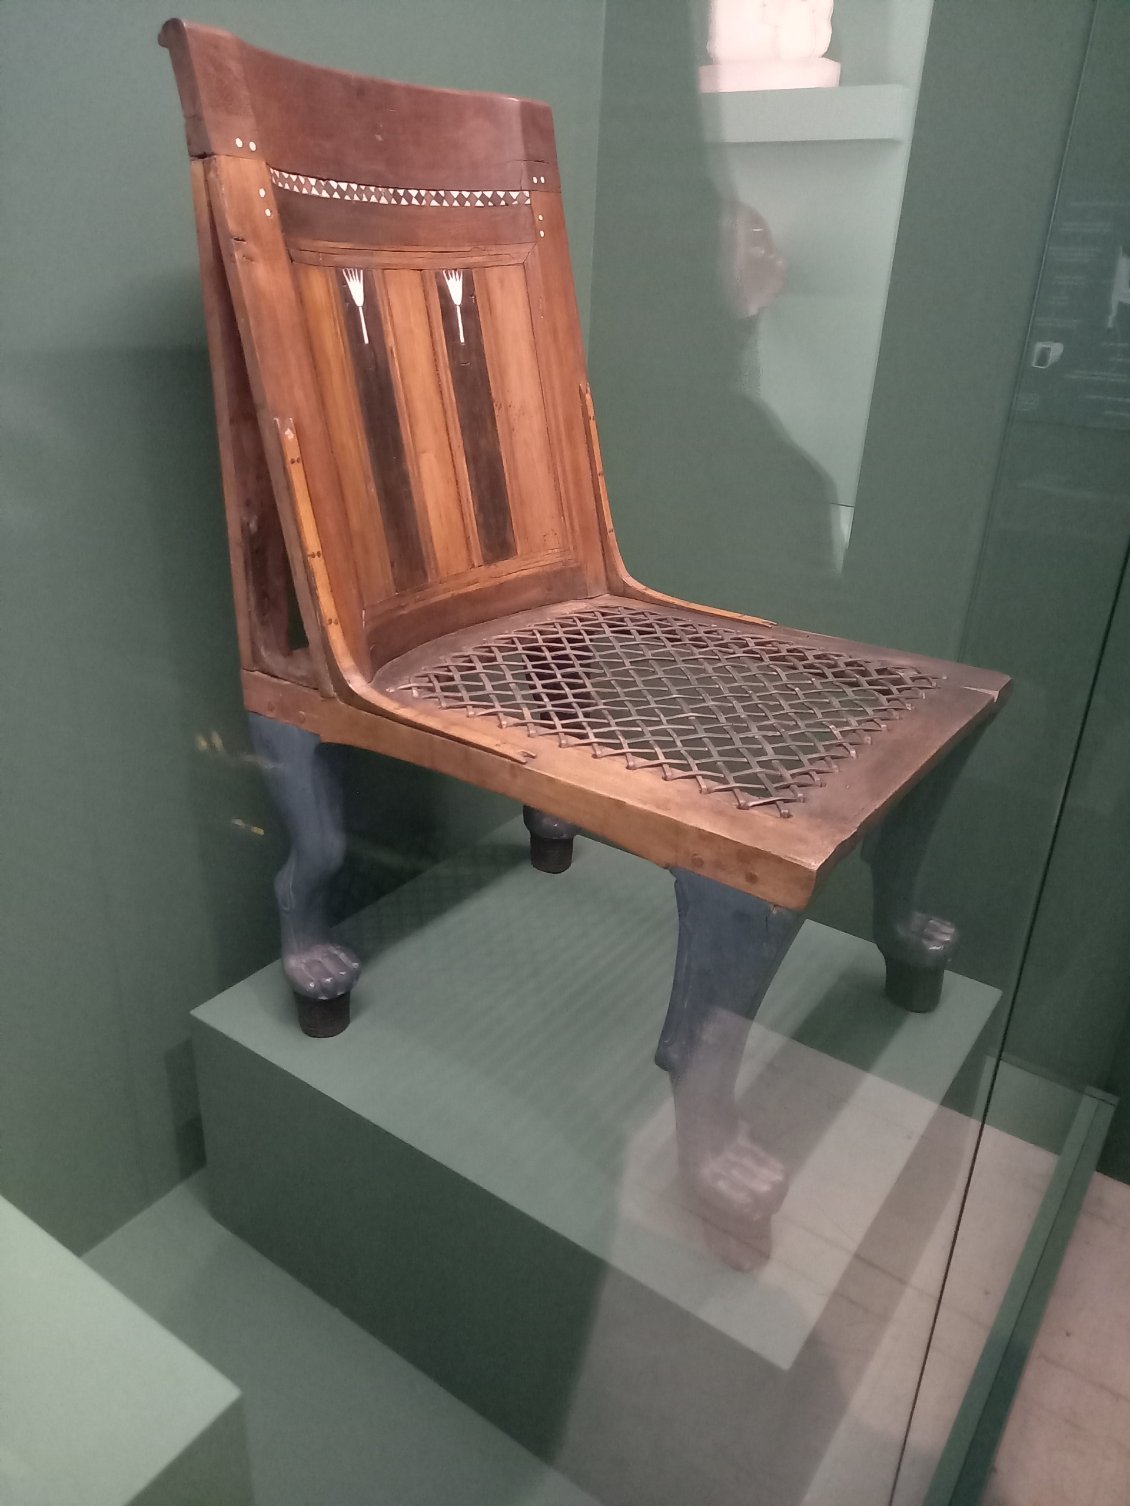 Quelle âge pour cette chaise aux pieds en pattes de lion ???? (tic-tac-tic-...) --> environ 3400 ans !...